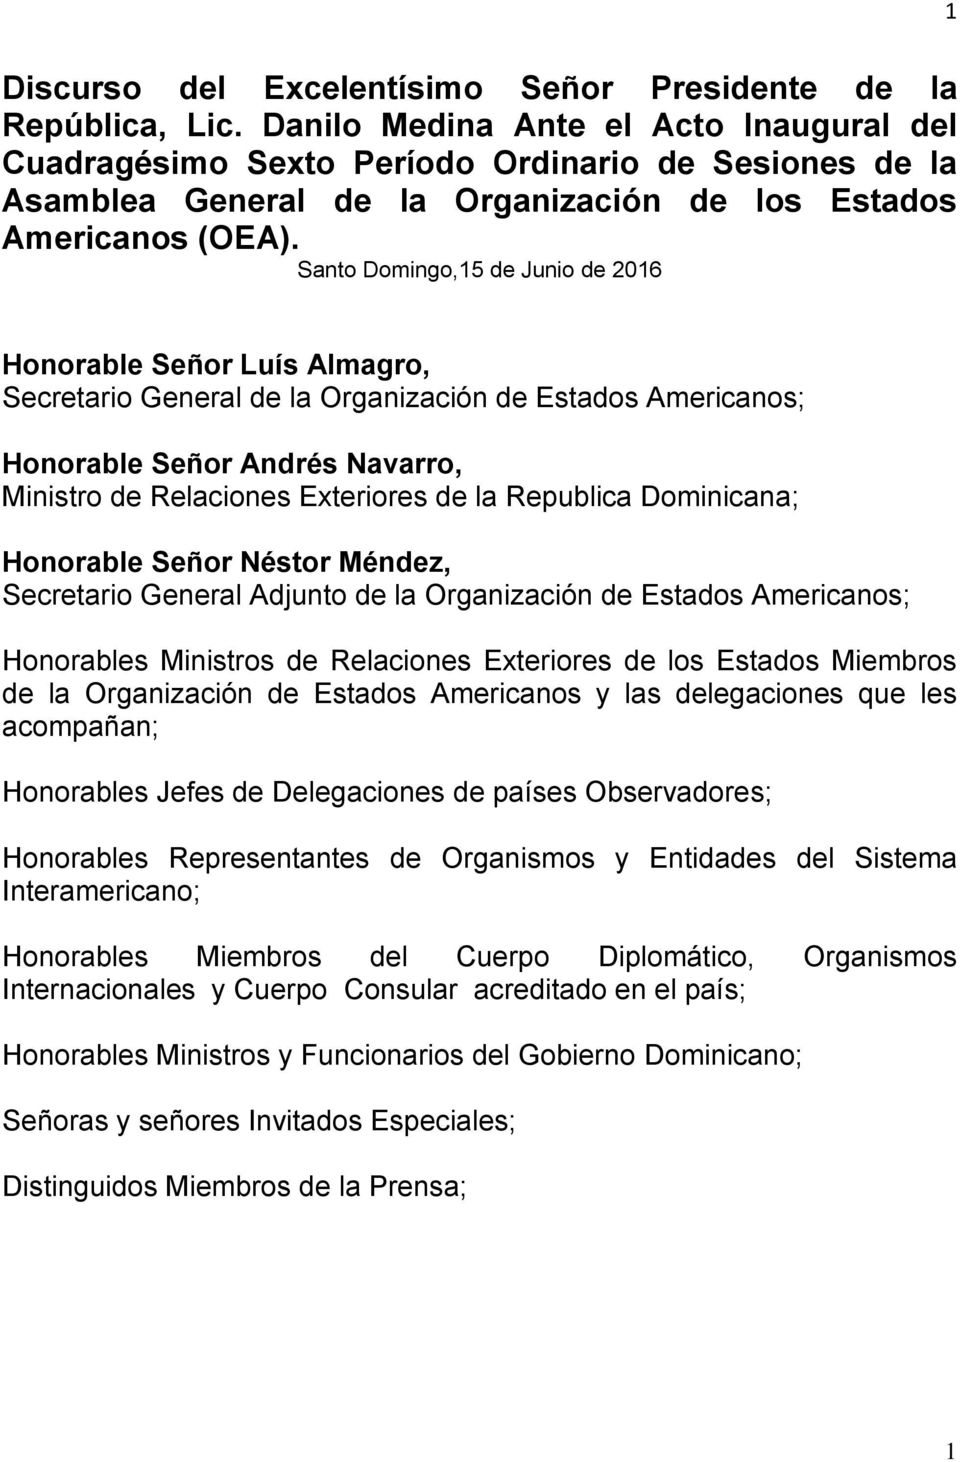 Santo Domingo,15 de Junio de 2016 Honorable Señor Luís Almagro, Secretario General de la Organización de Estados Americanos; Honorable Señor Andrés Navarro, Ministro de Relaciones Exteriores de la